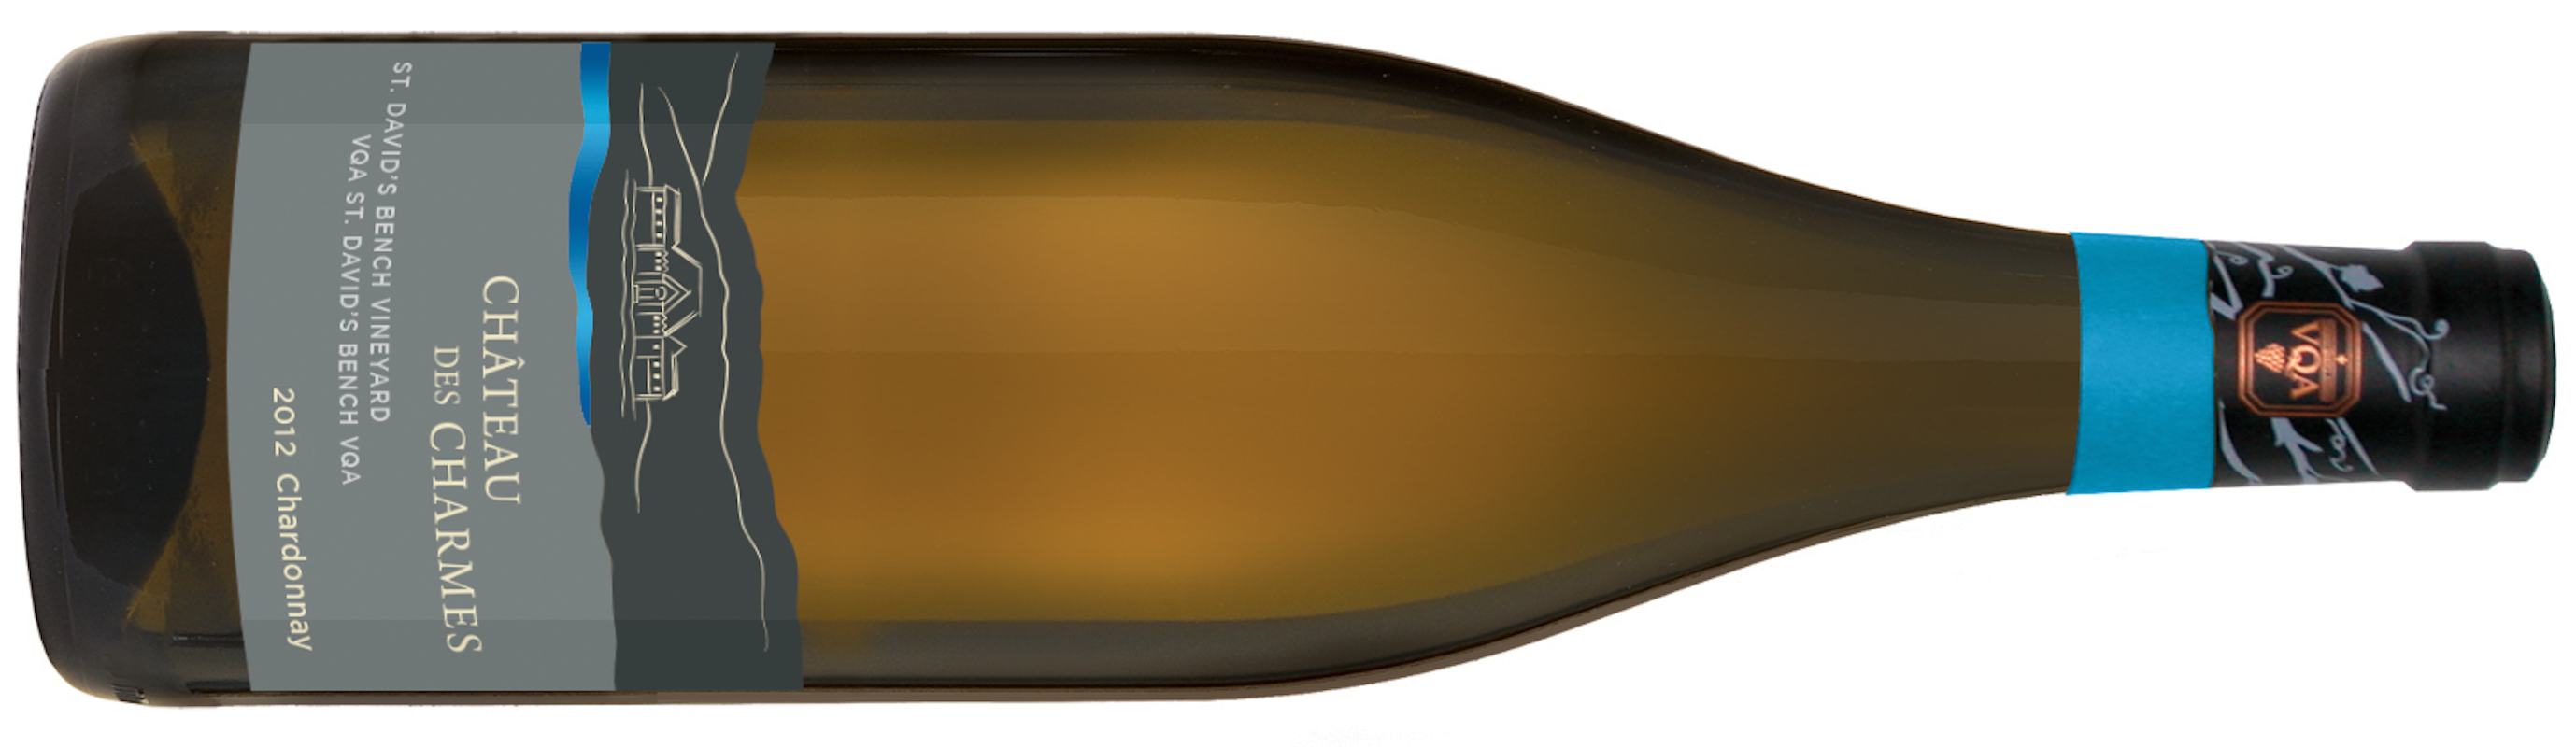 llSDB-Chardonnay 2012